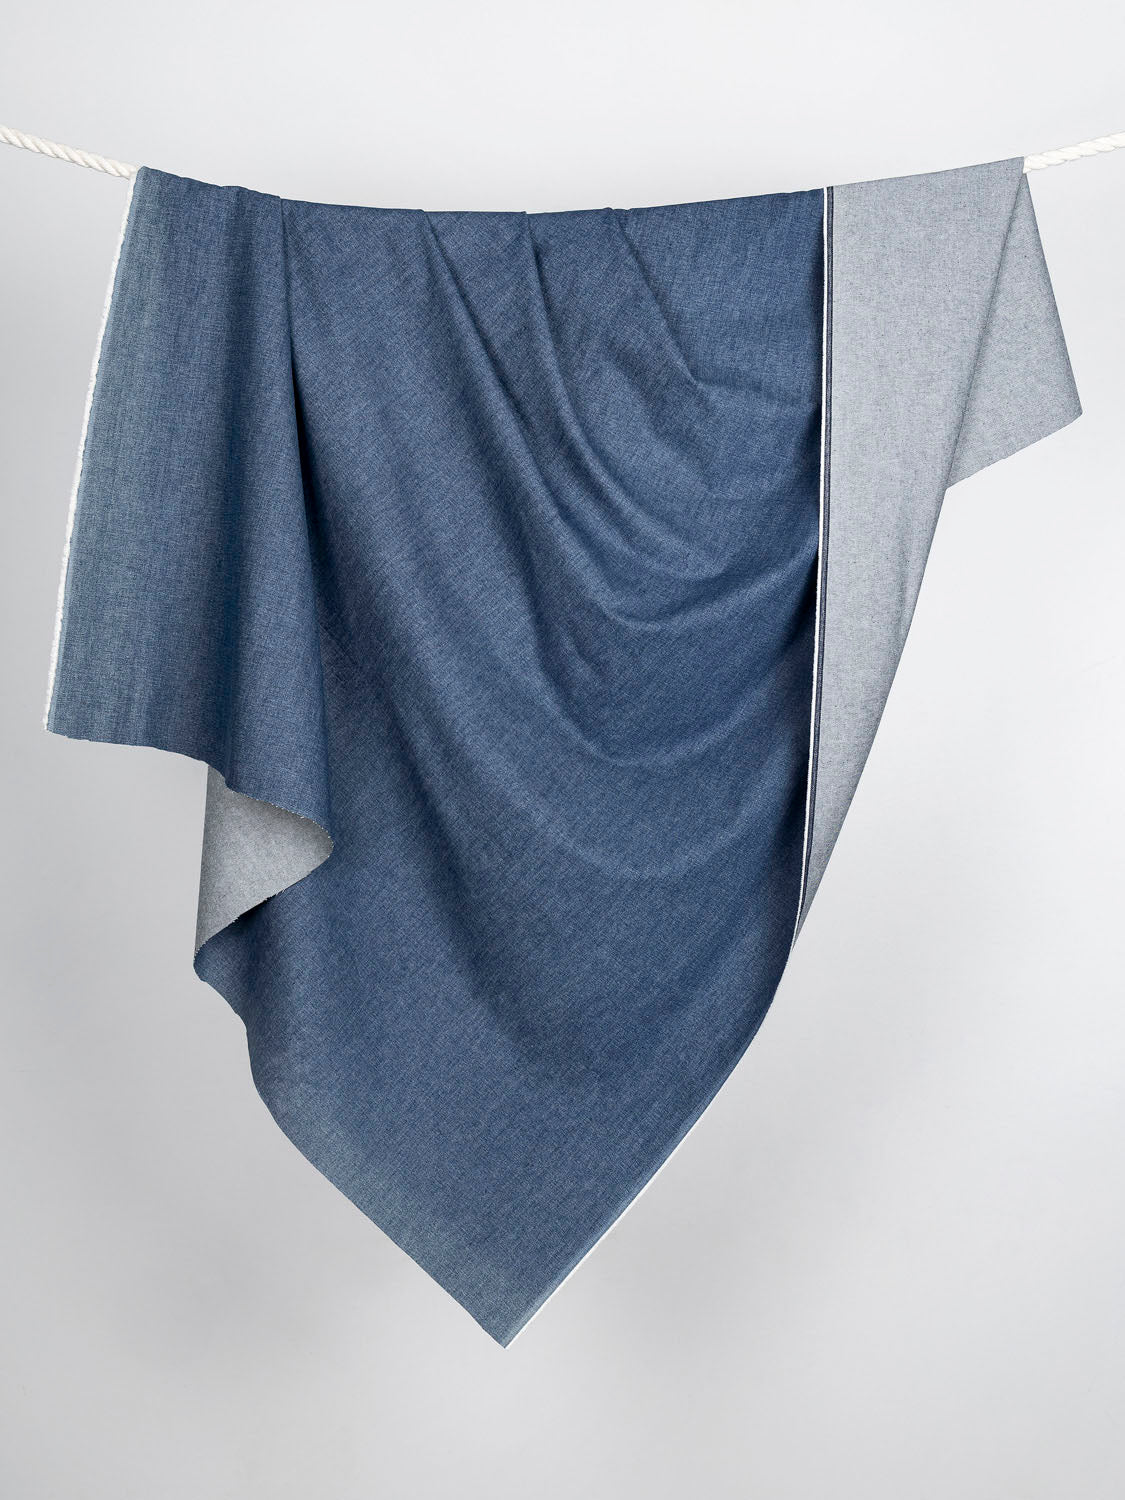 11.5oz Non-Stretch Eco Stone-Wash Denim - Light Blue | Core Fabrics